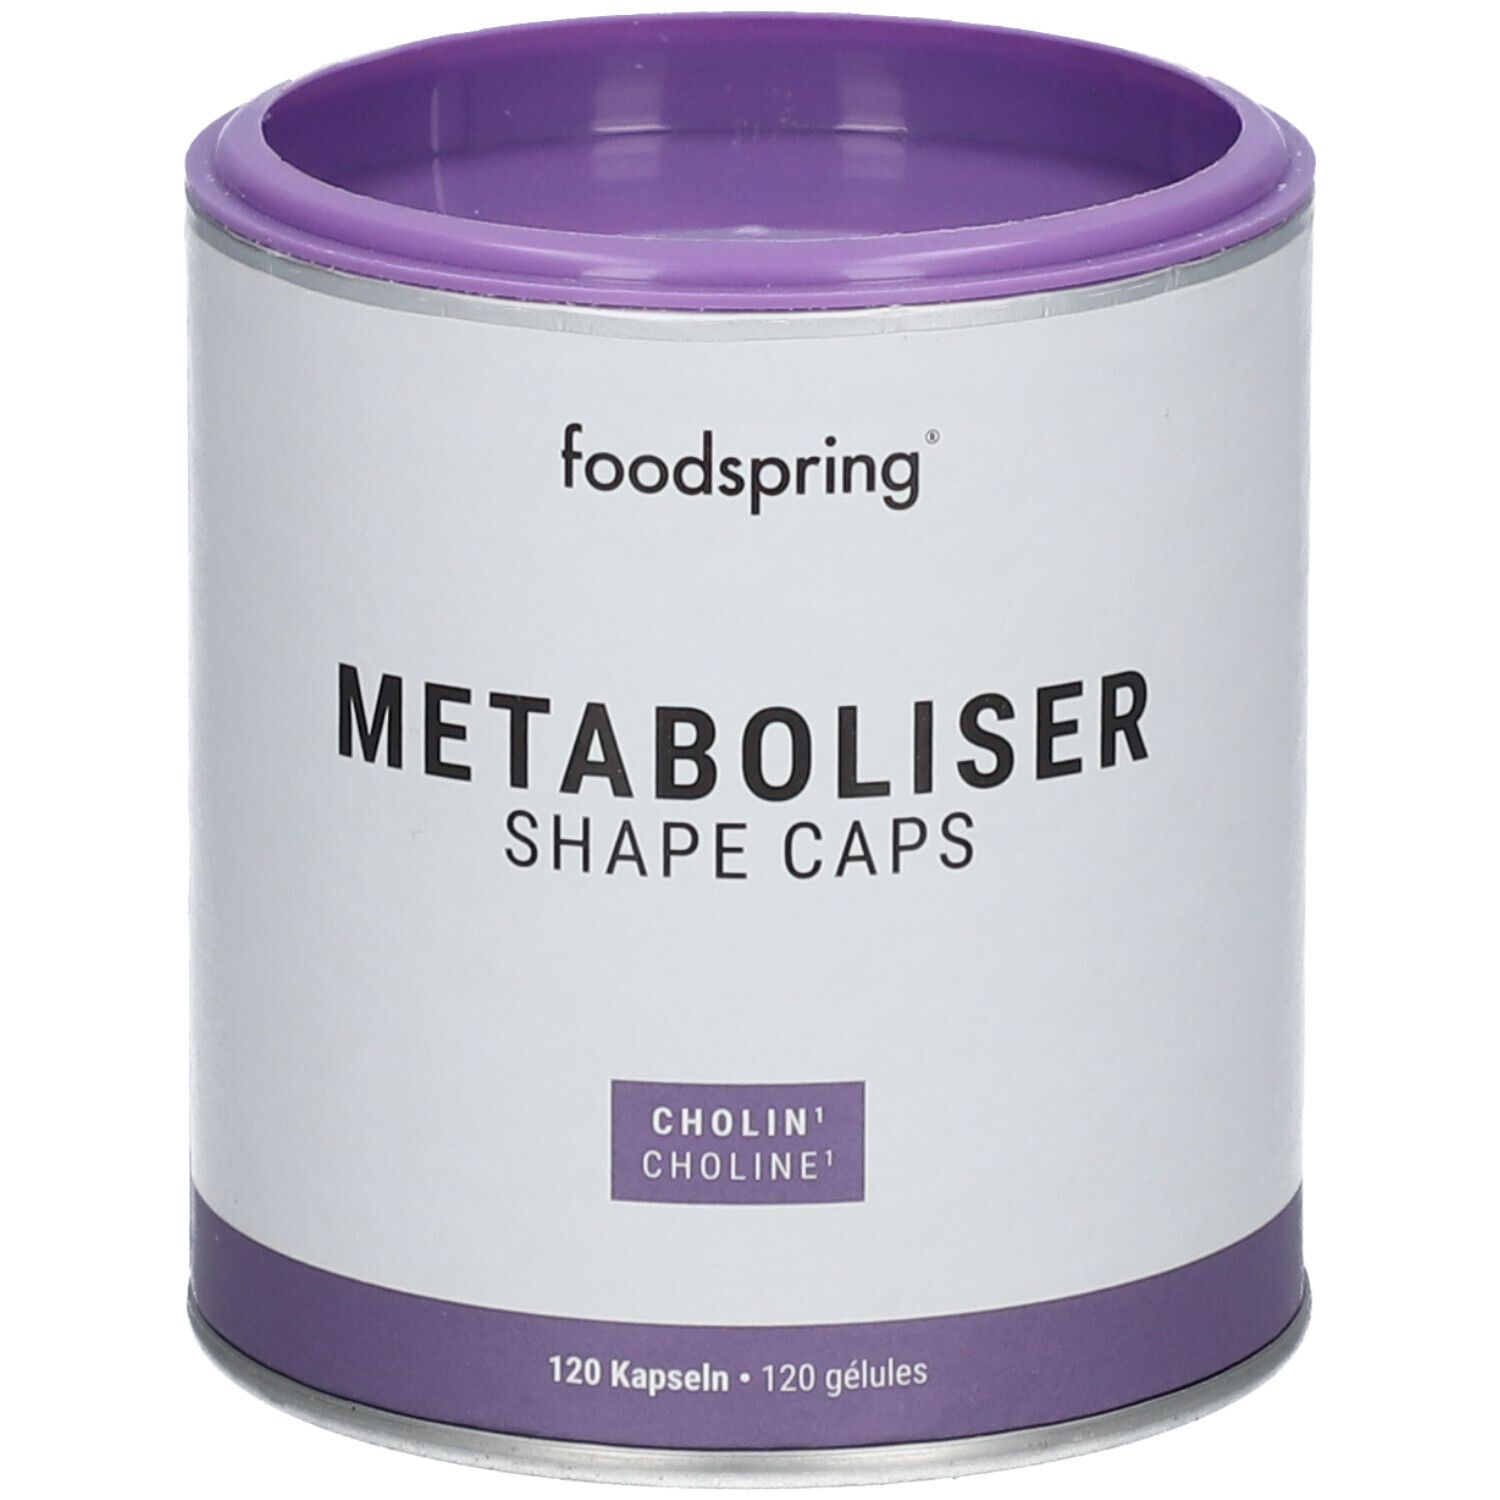 foodspring® Metaboliser Shape Caps